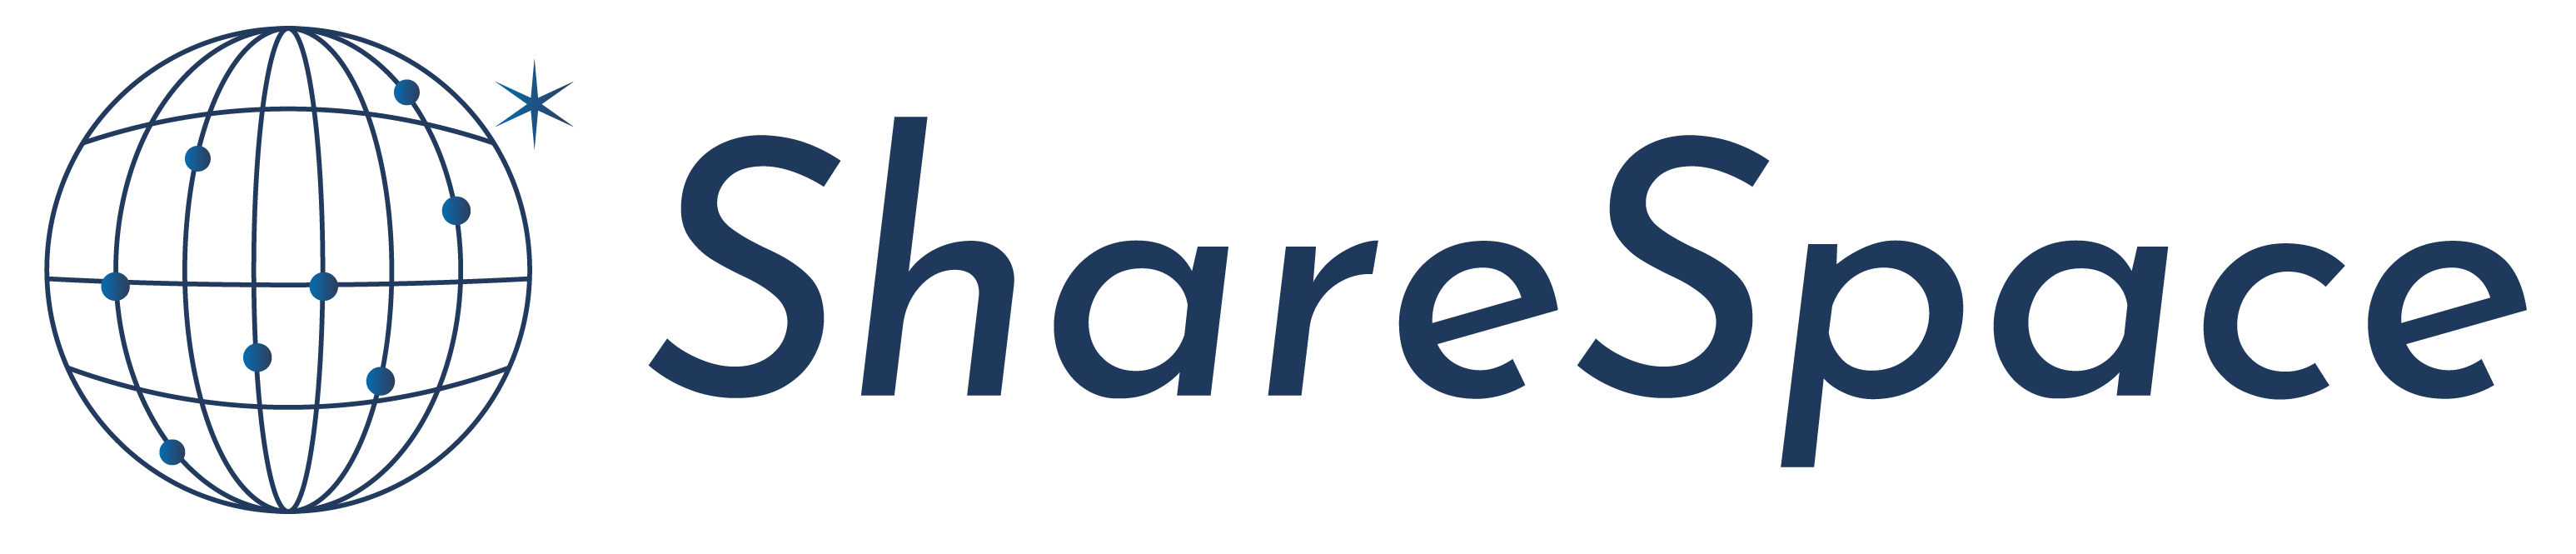 ShareSpace｜サブスク商品・サービスの比較メディア